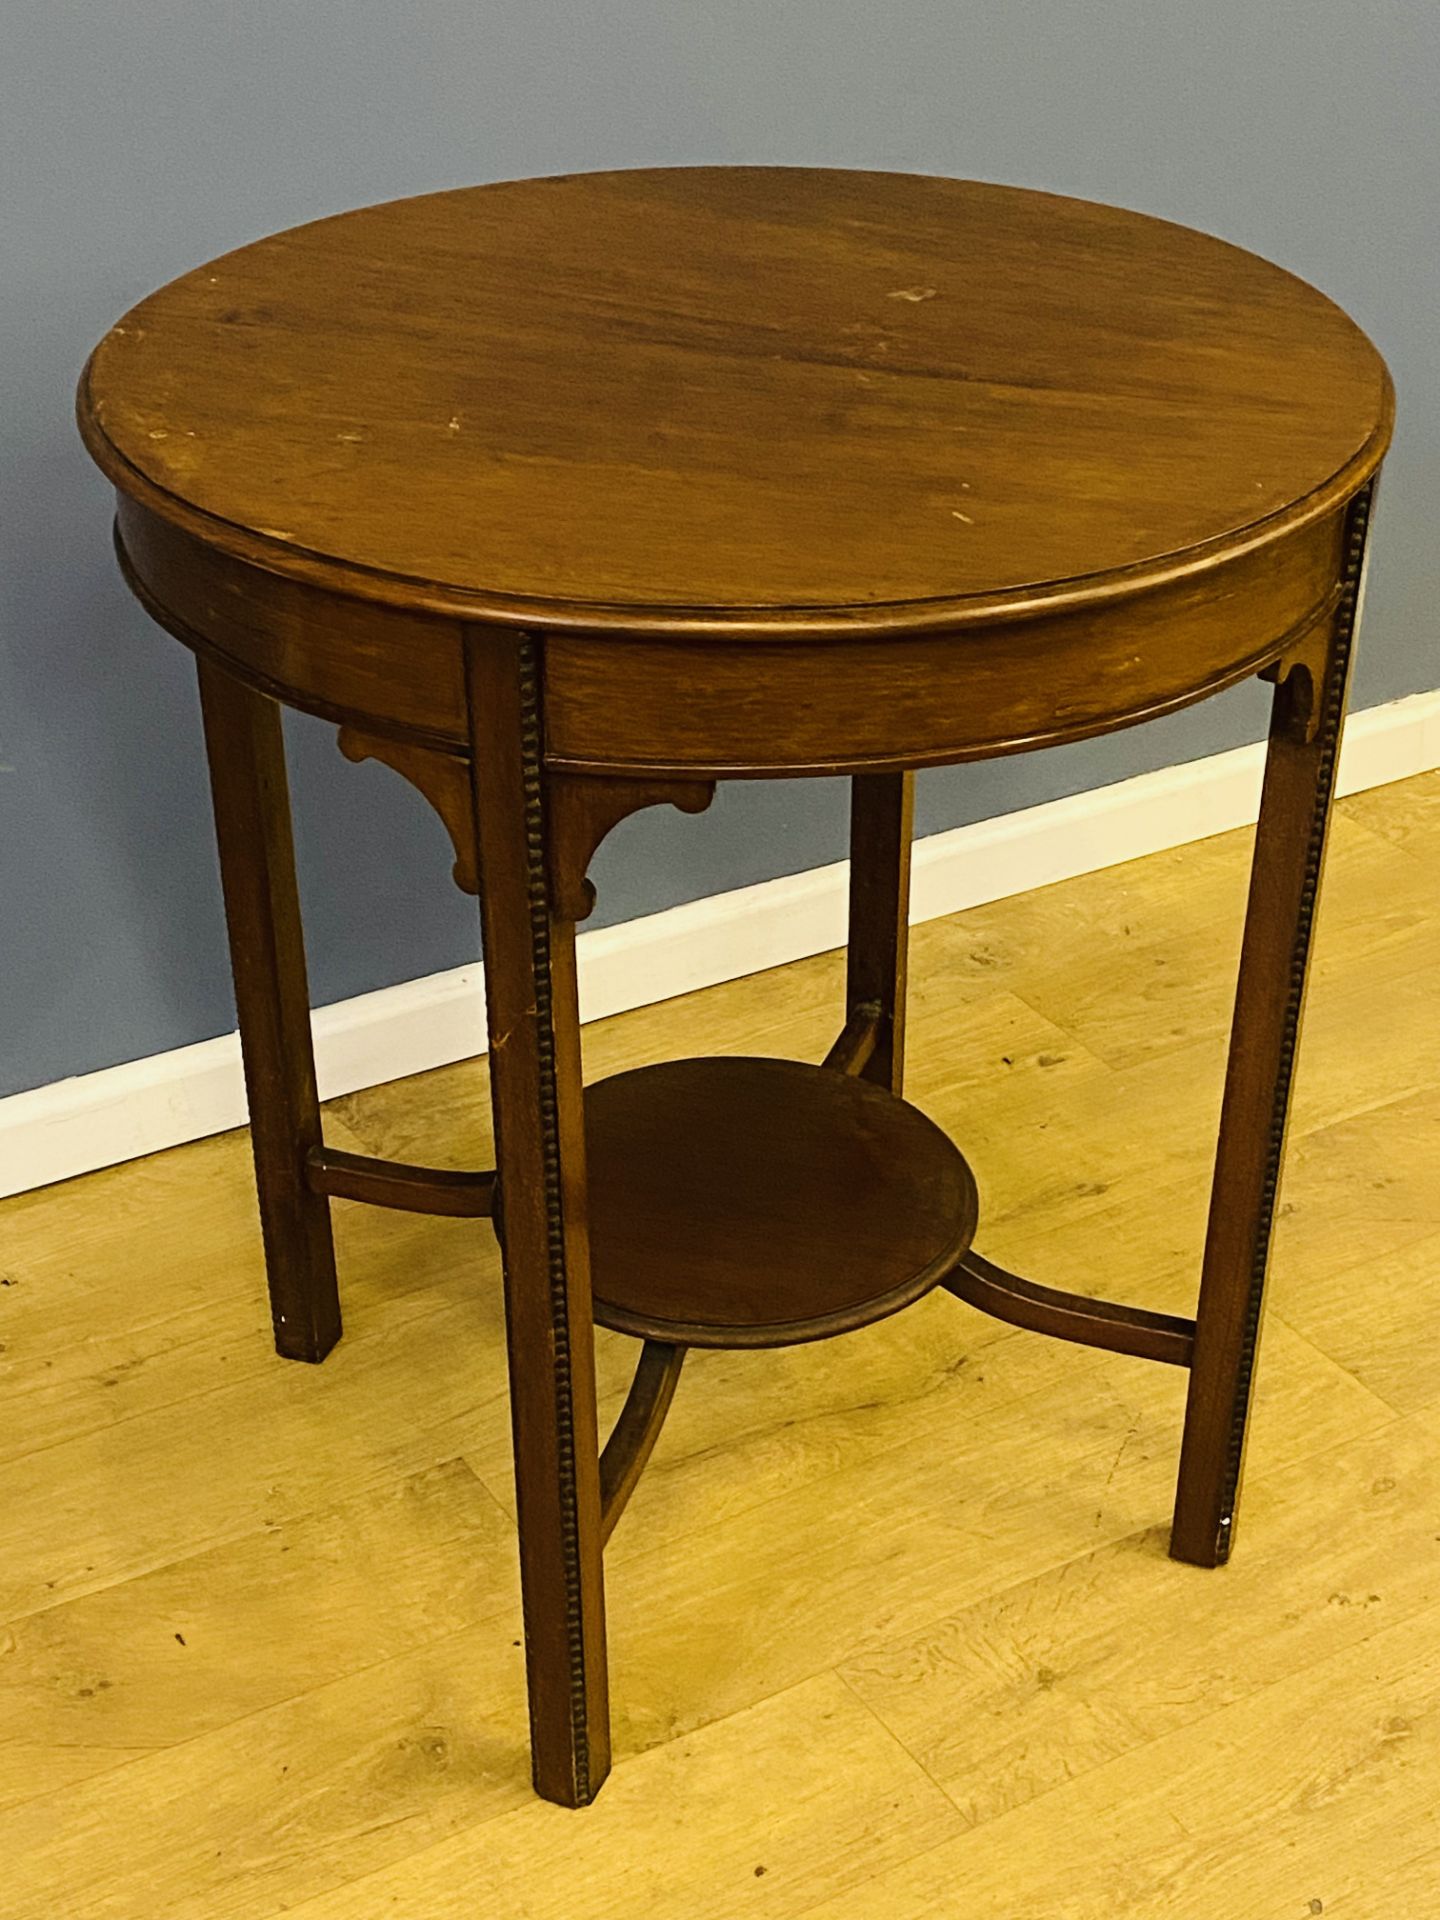 Victorian circular mahogany table - Image 3 of 3